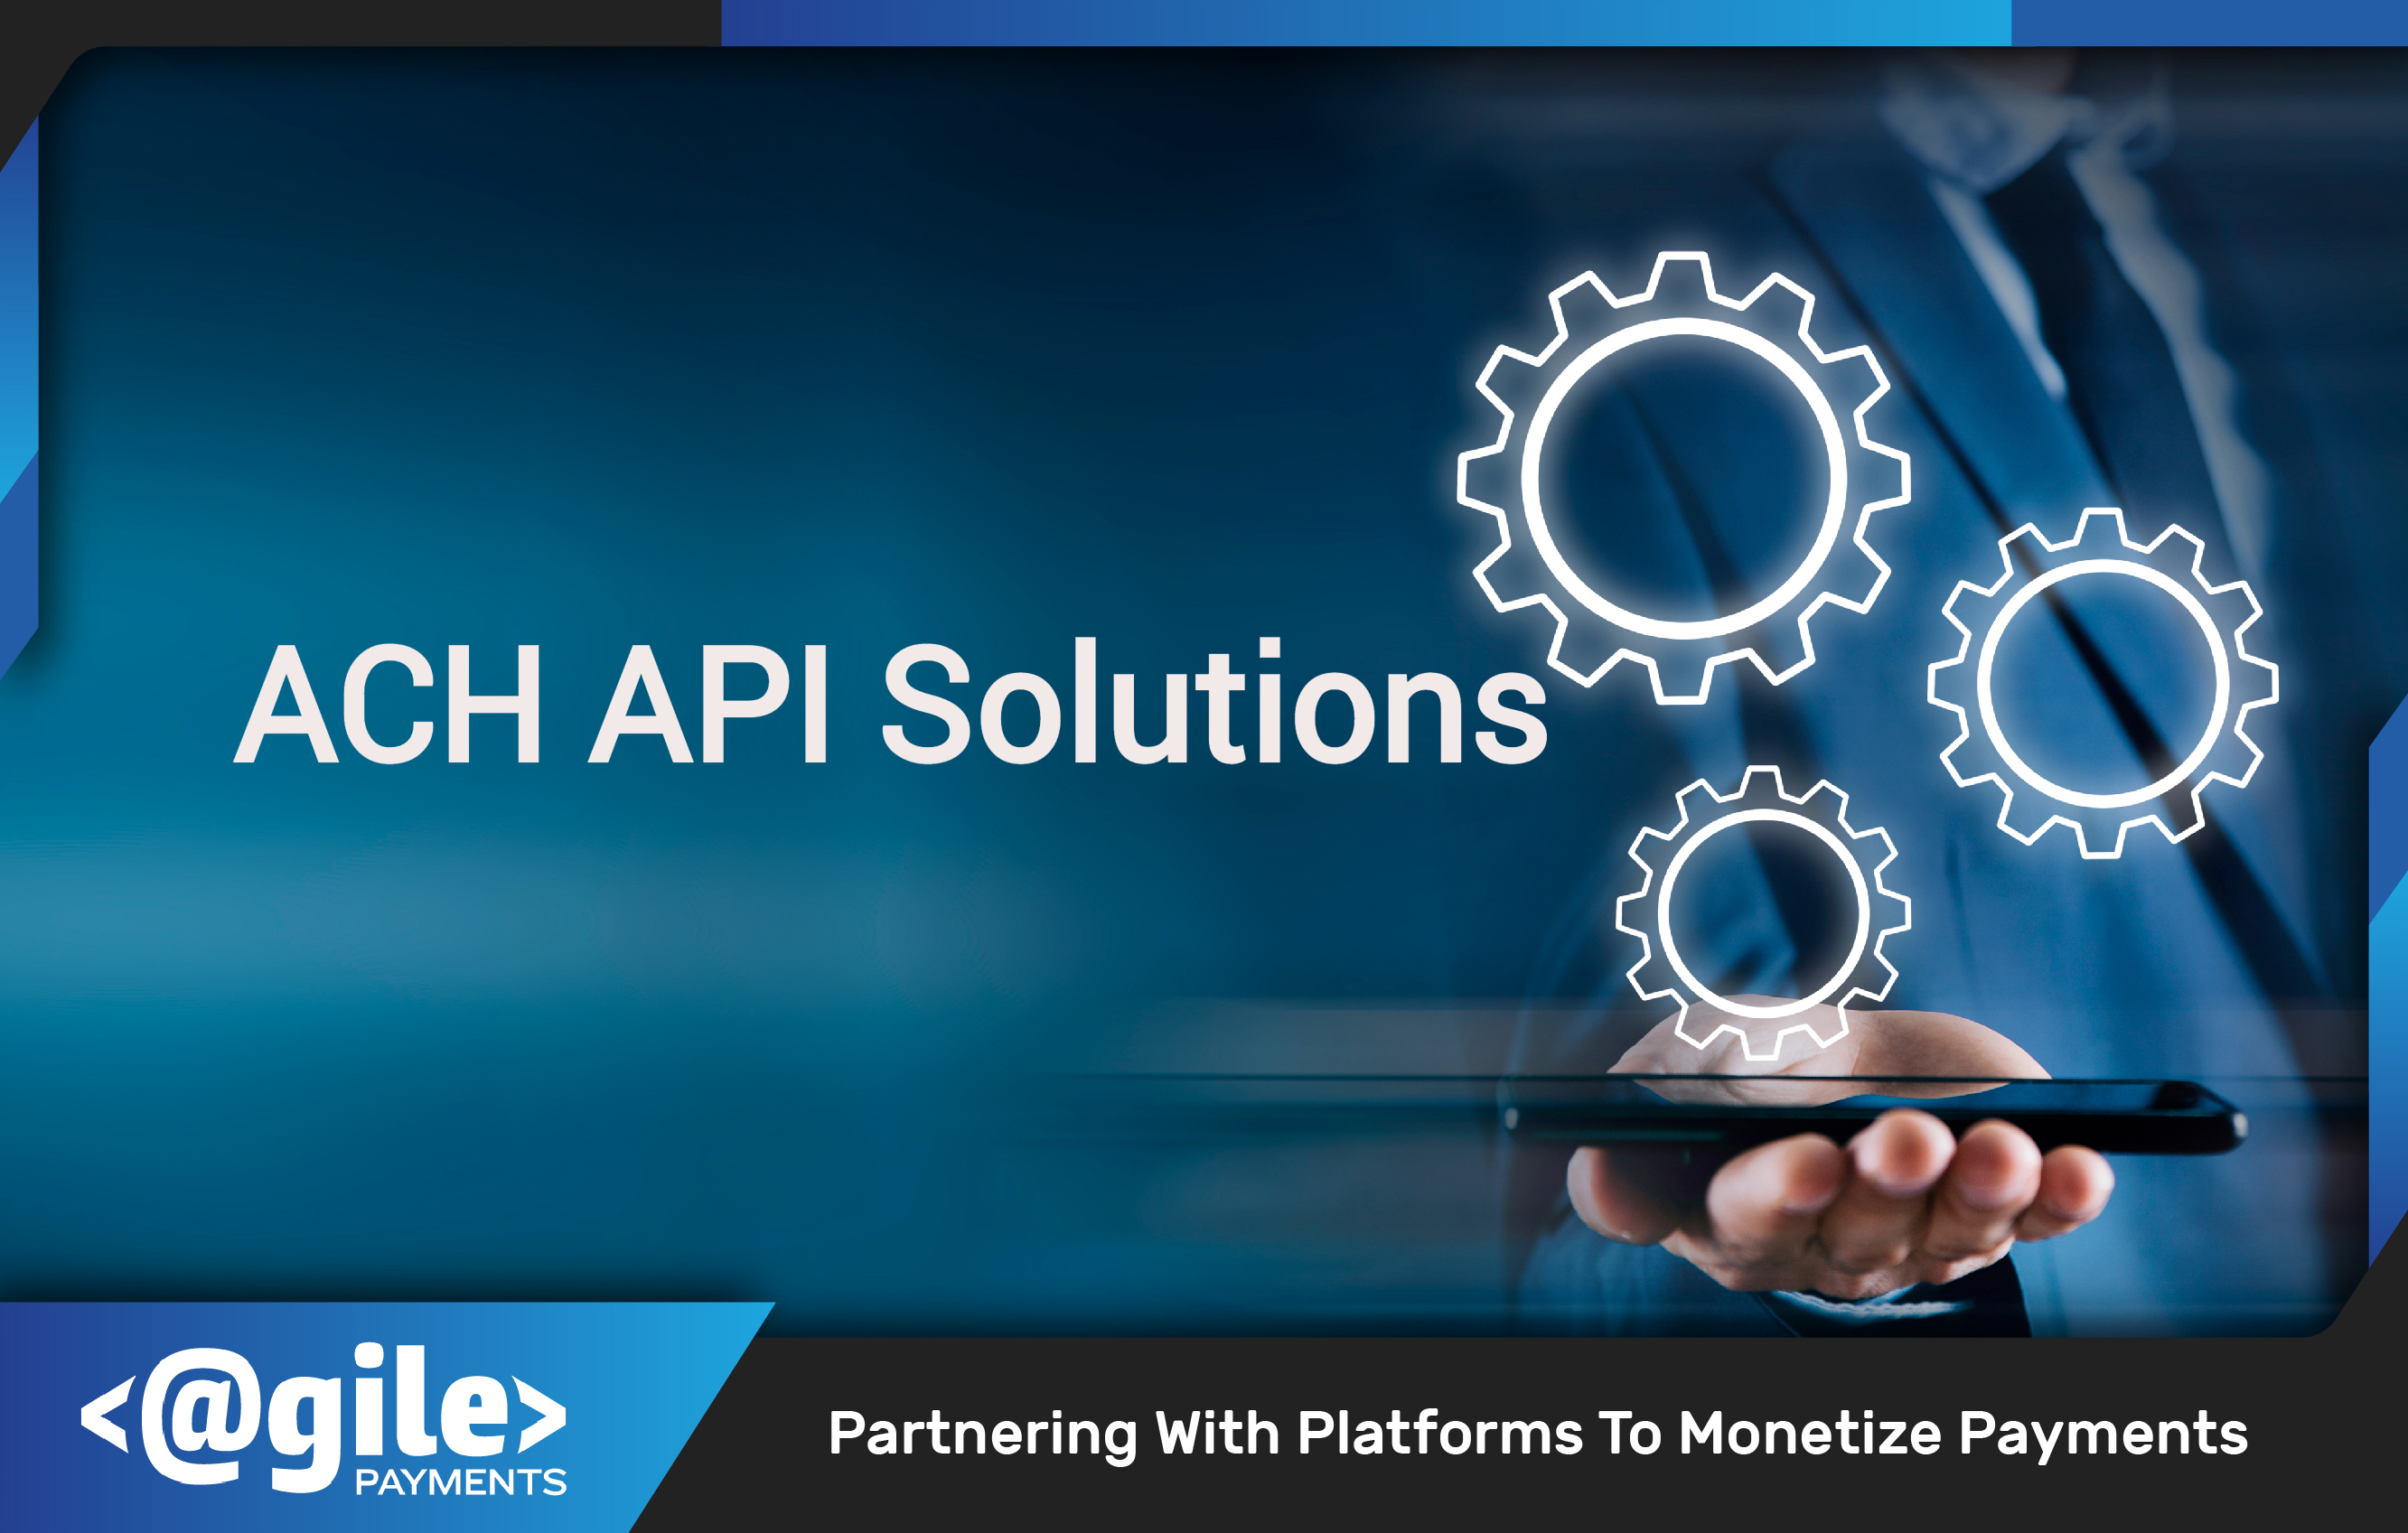 ACH API Solutions